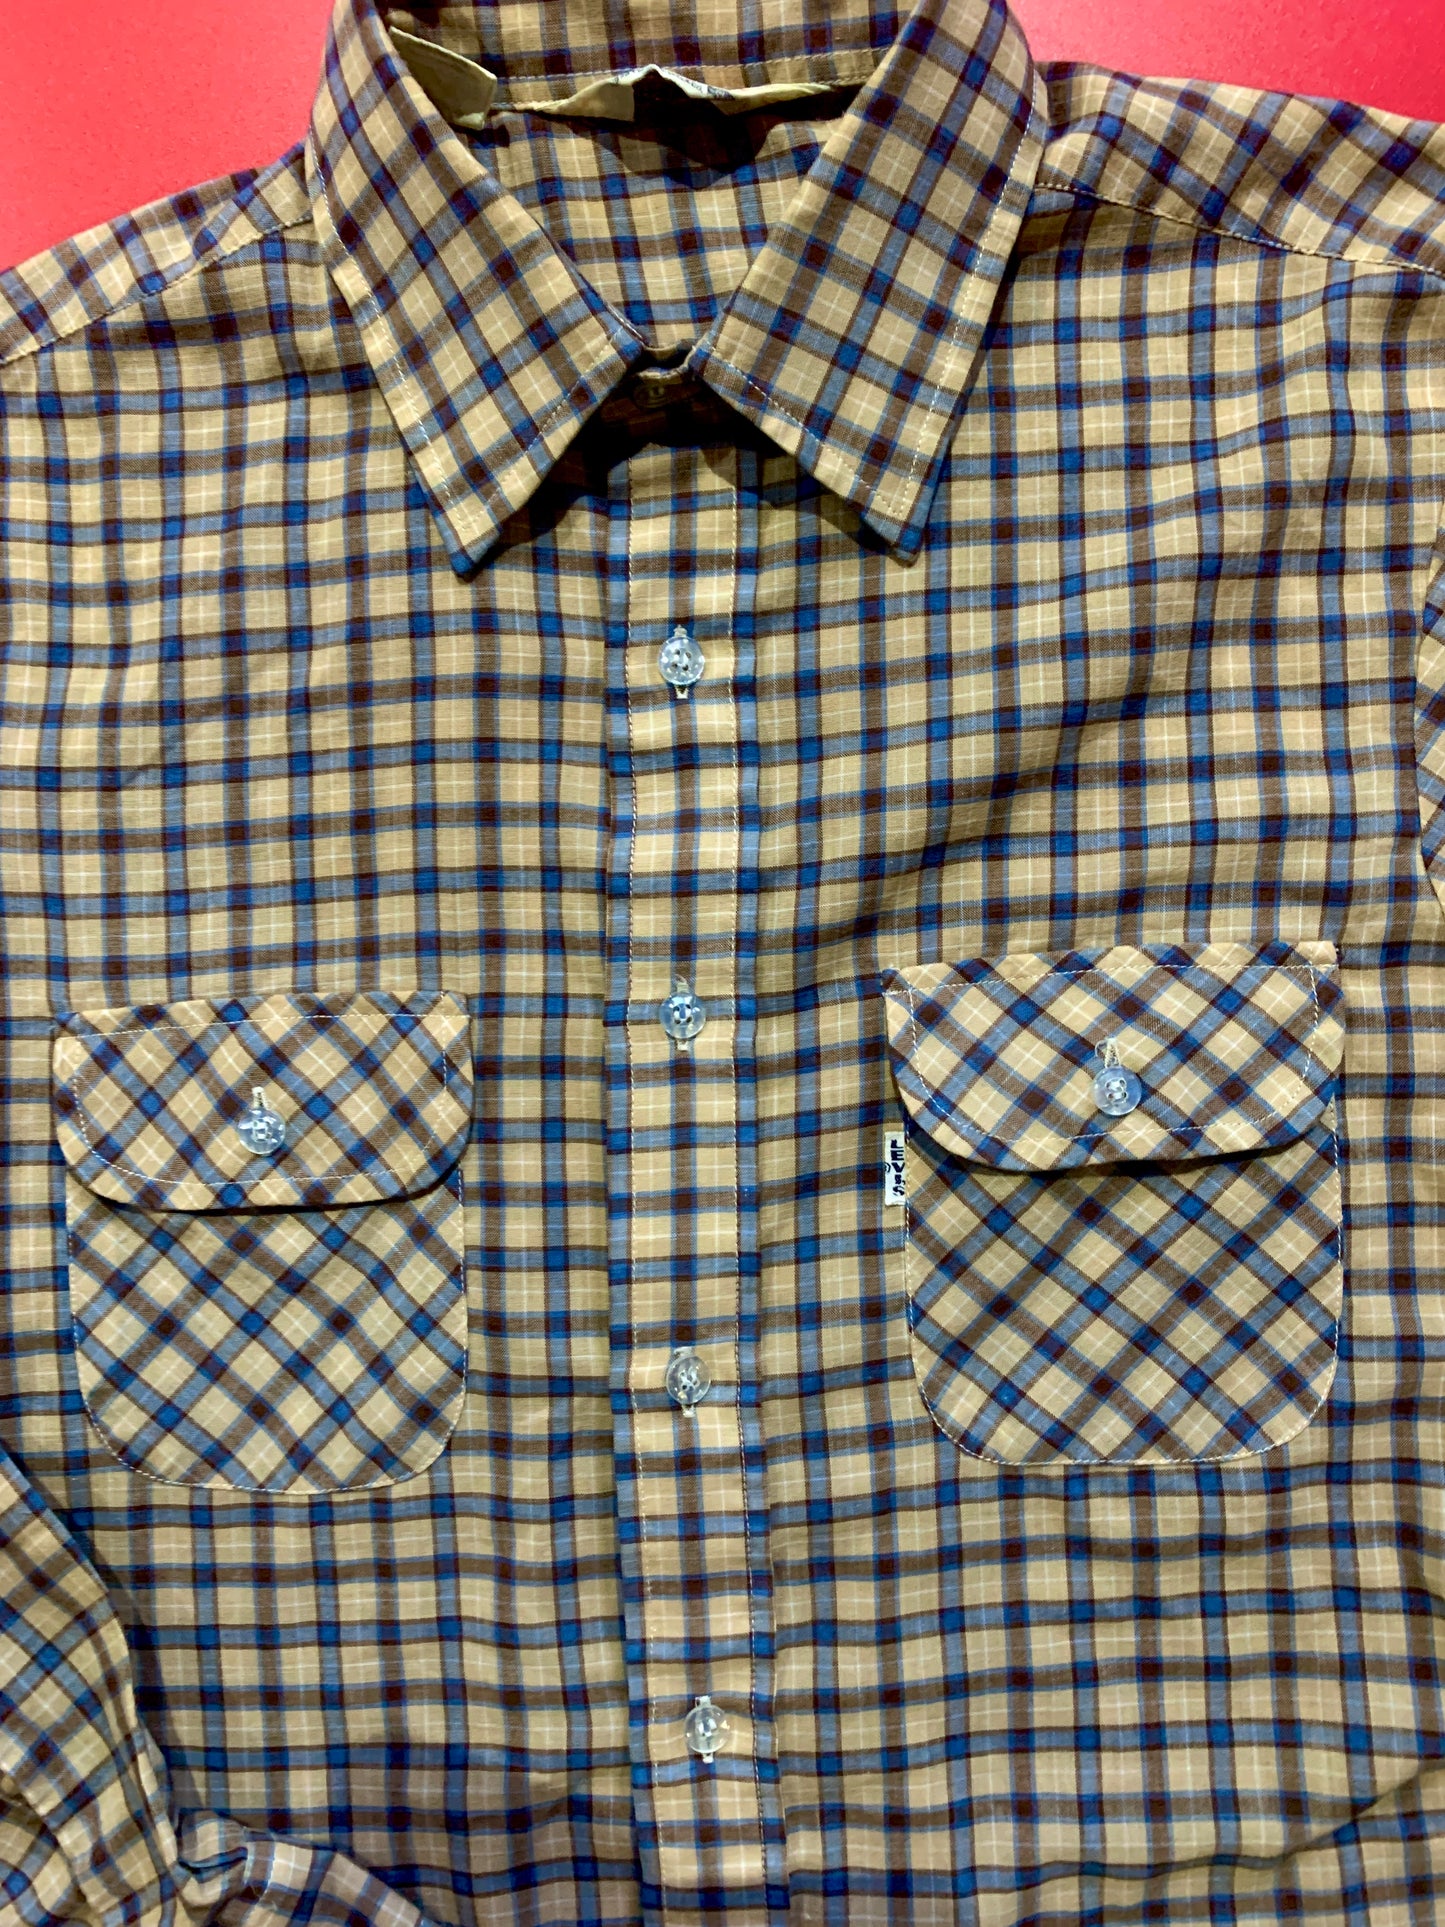 Levi Checker Shirt. ( Big E )